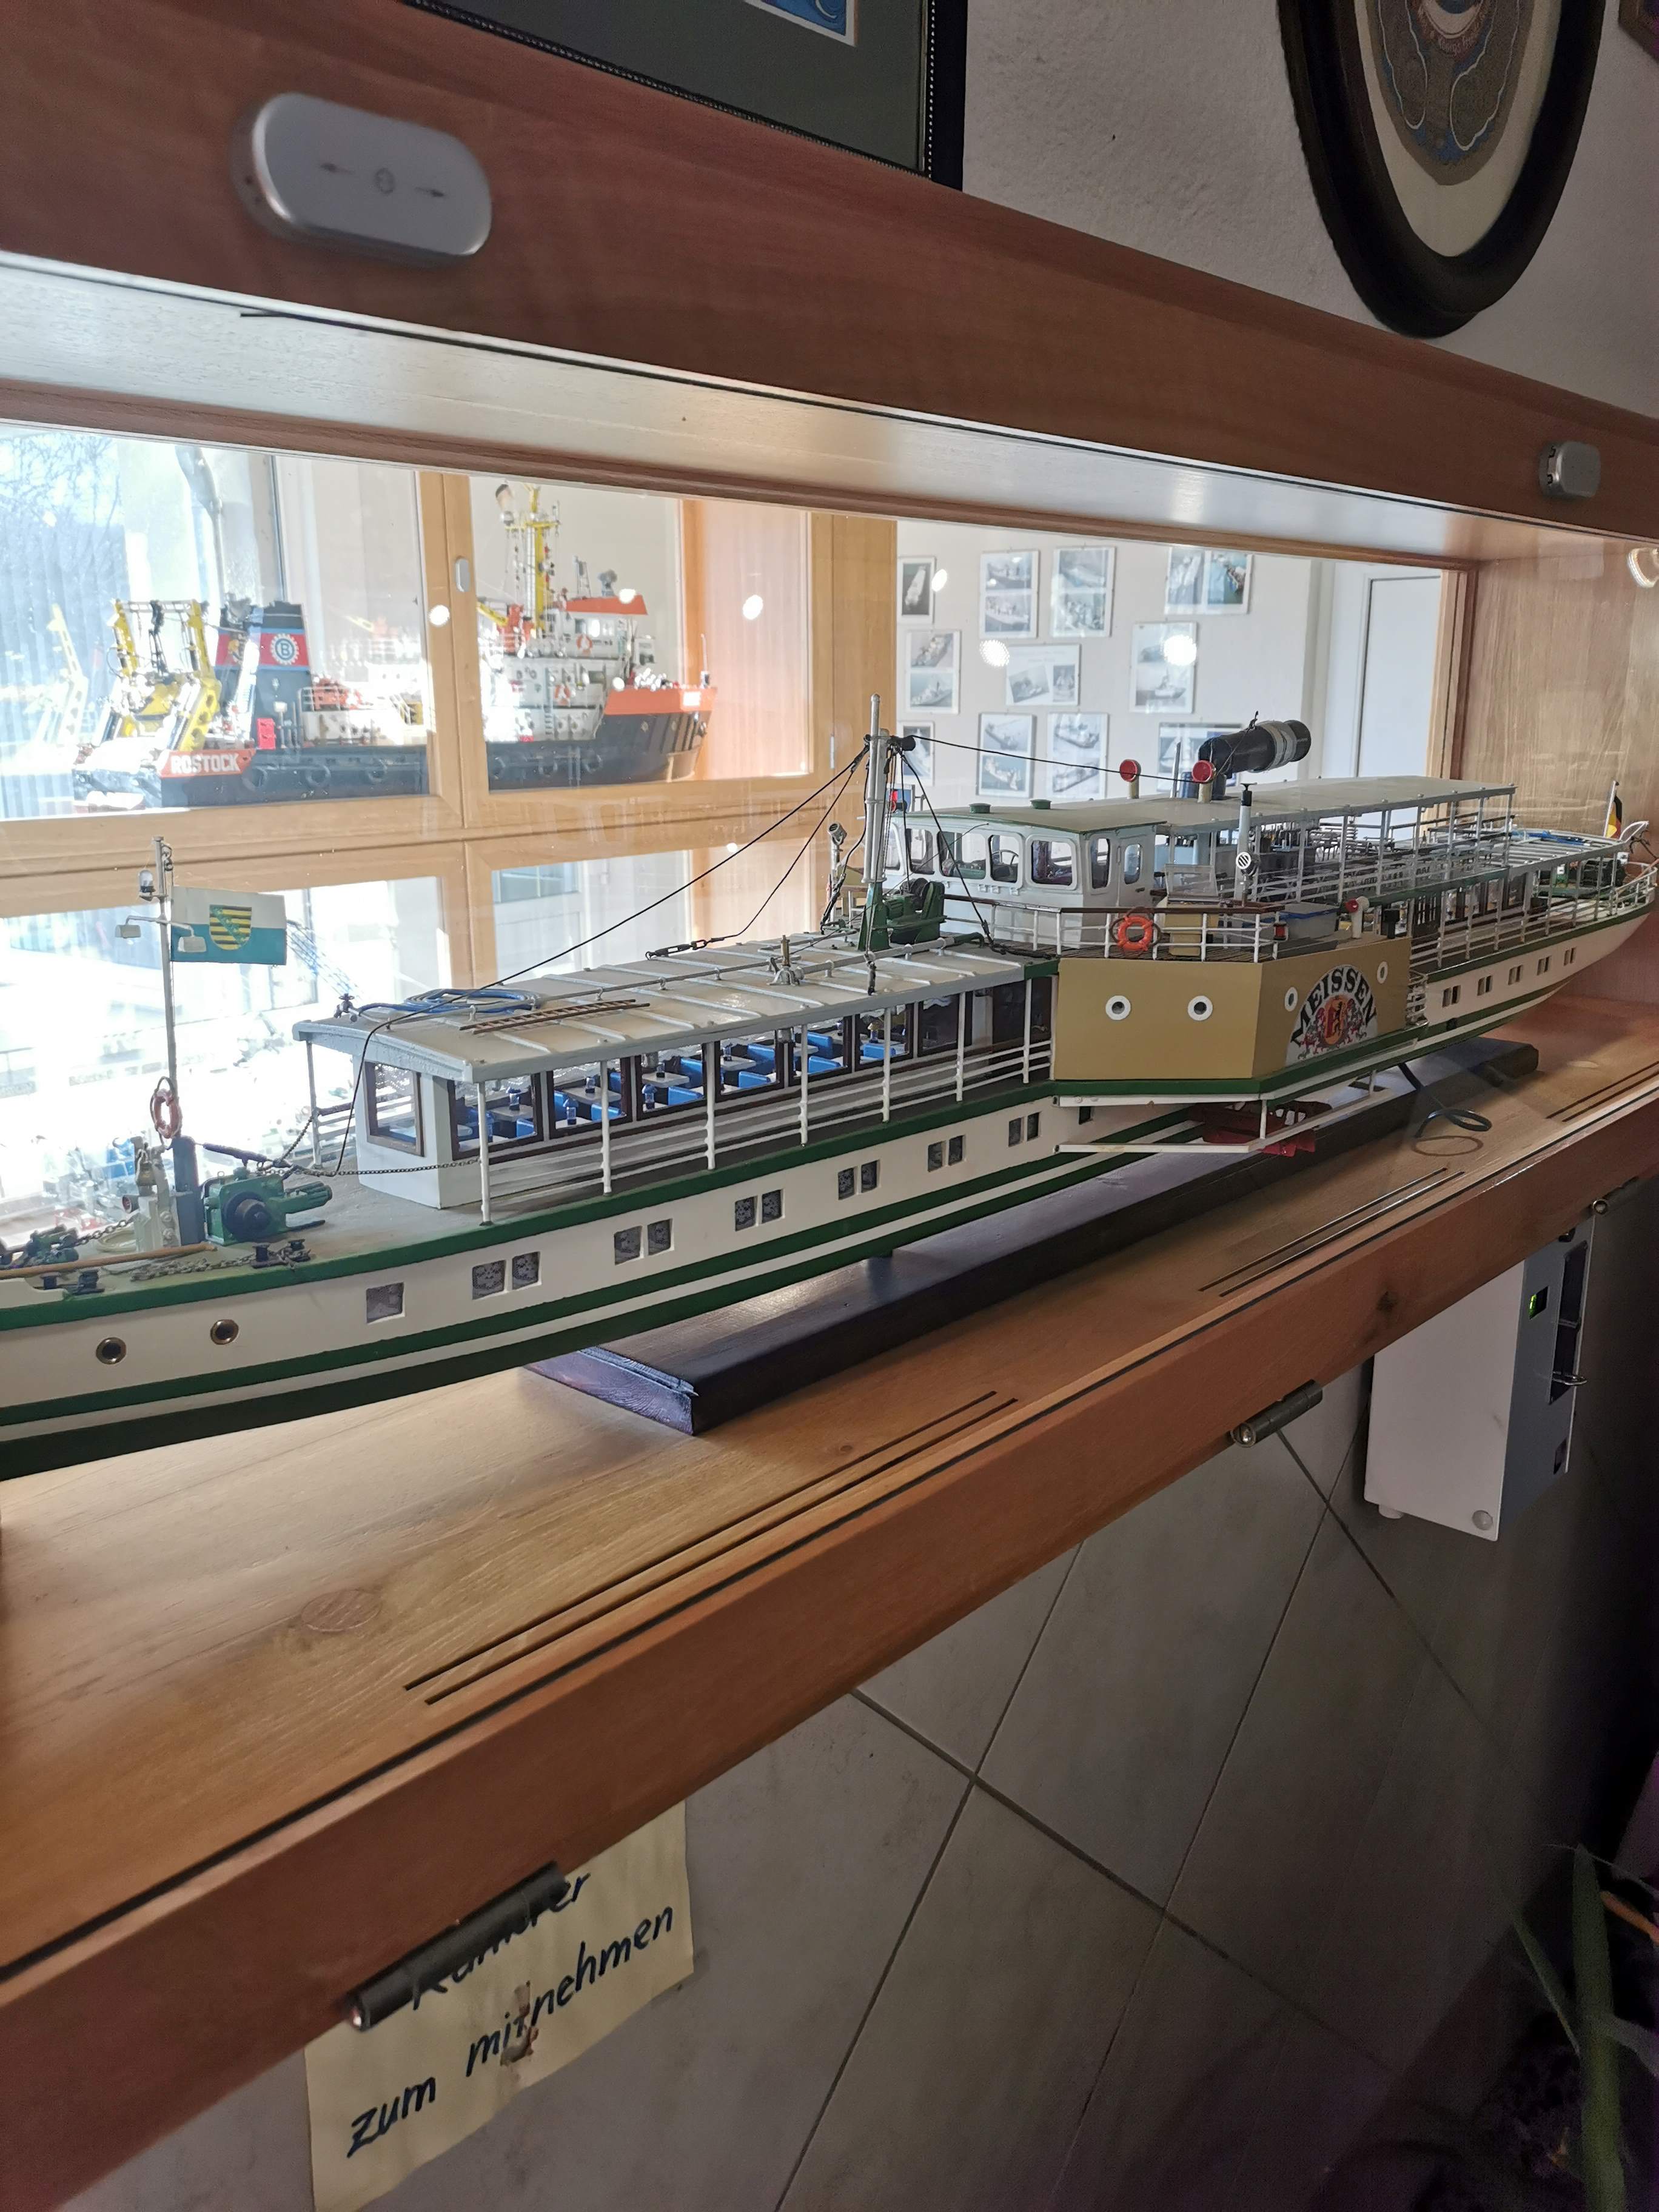 Schöne Ausstellung von Schiffsmodellen im Nebenraum der Karpfenschänke